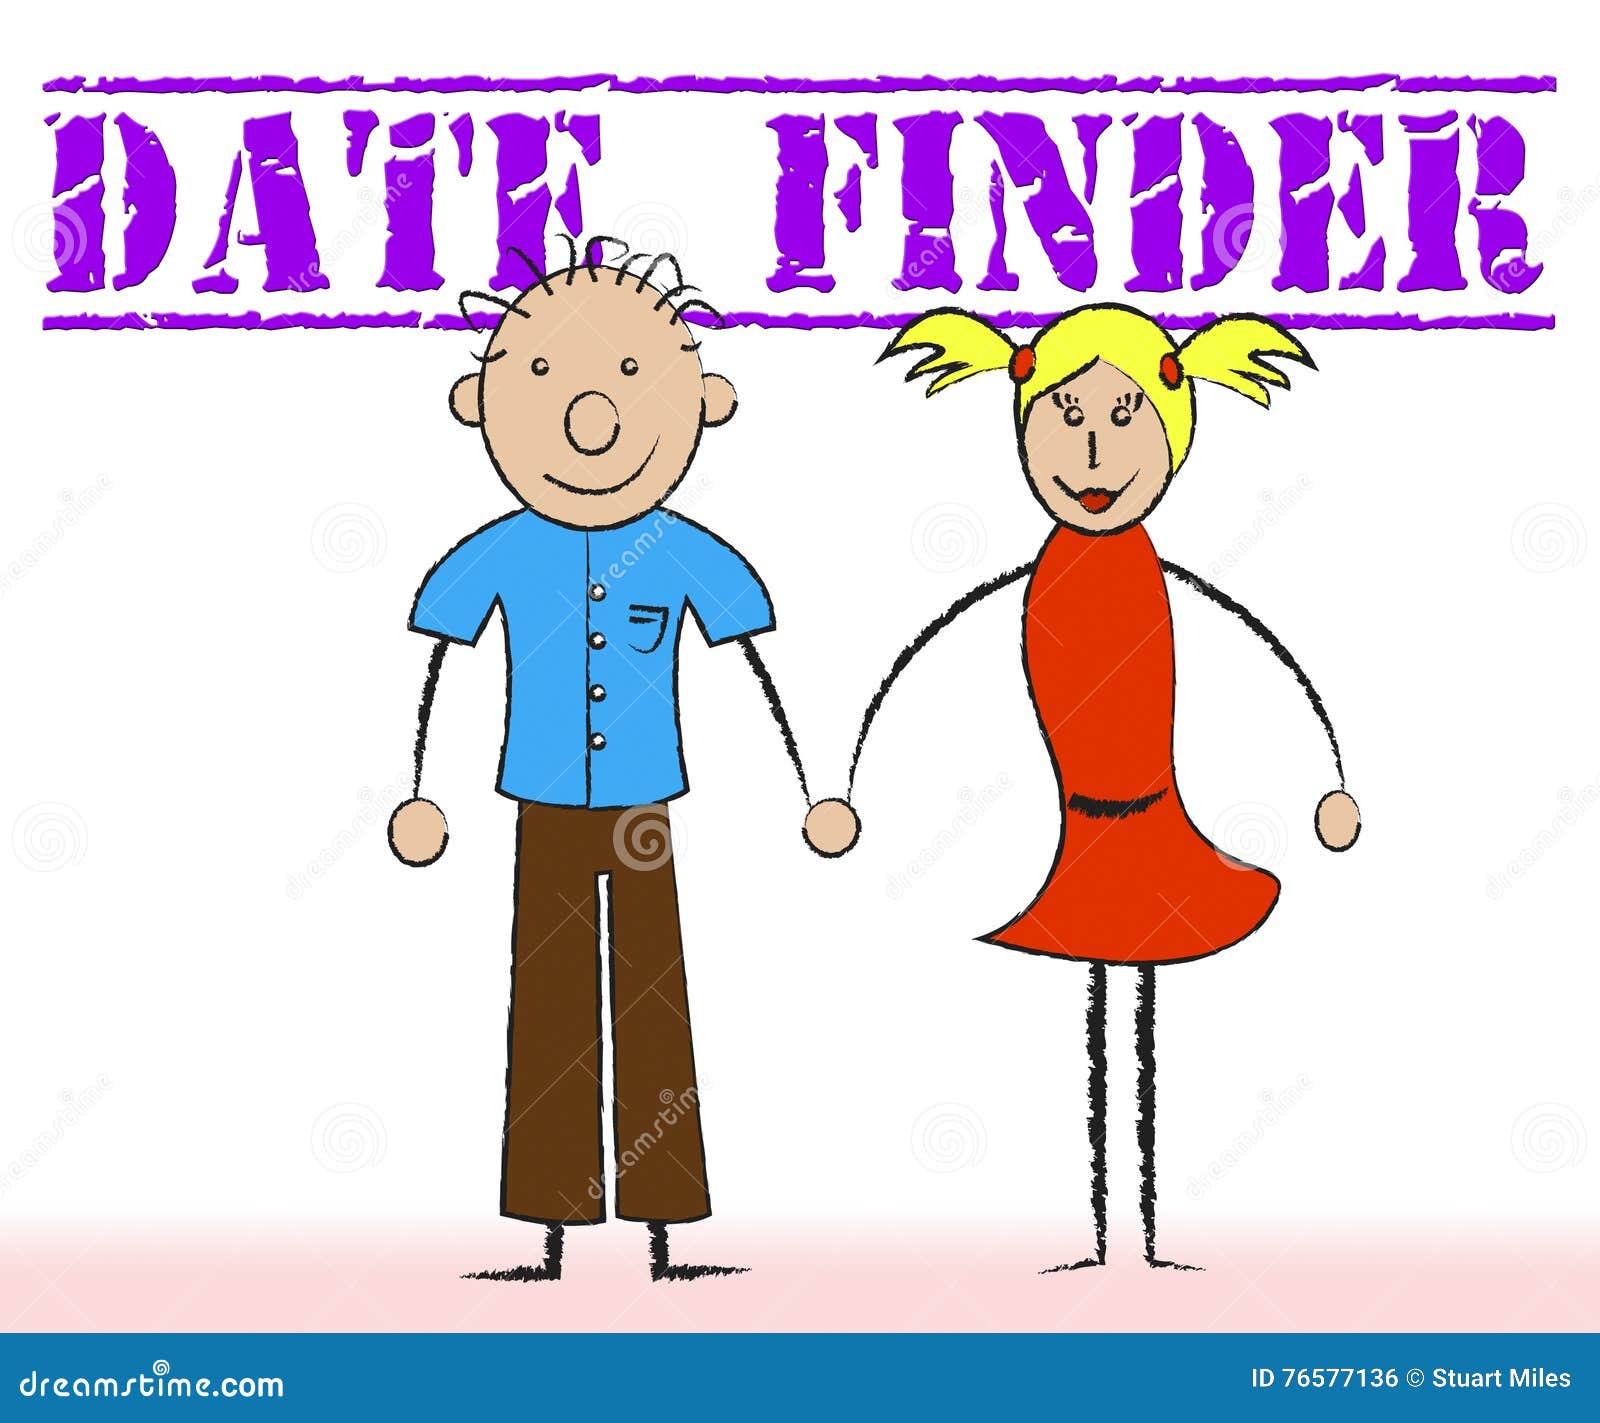 Dating Finder